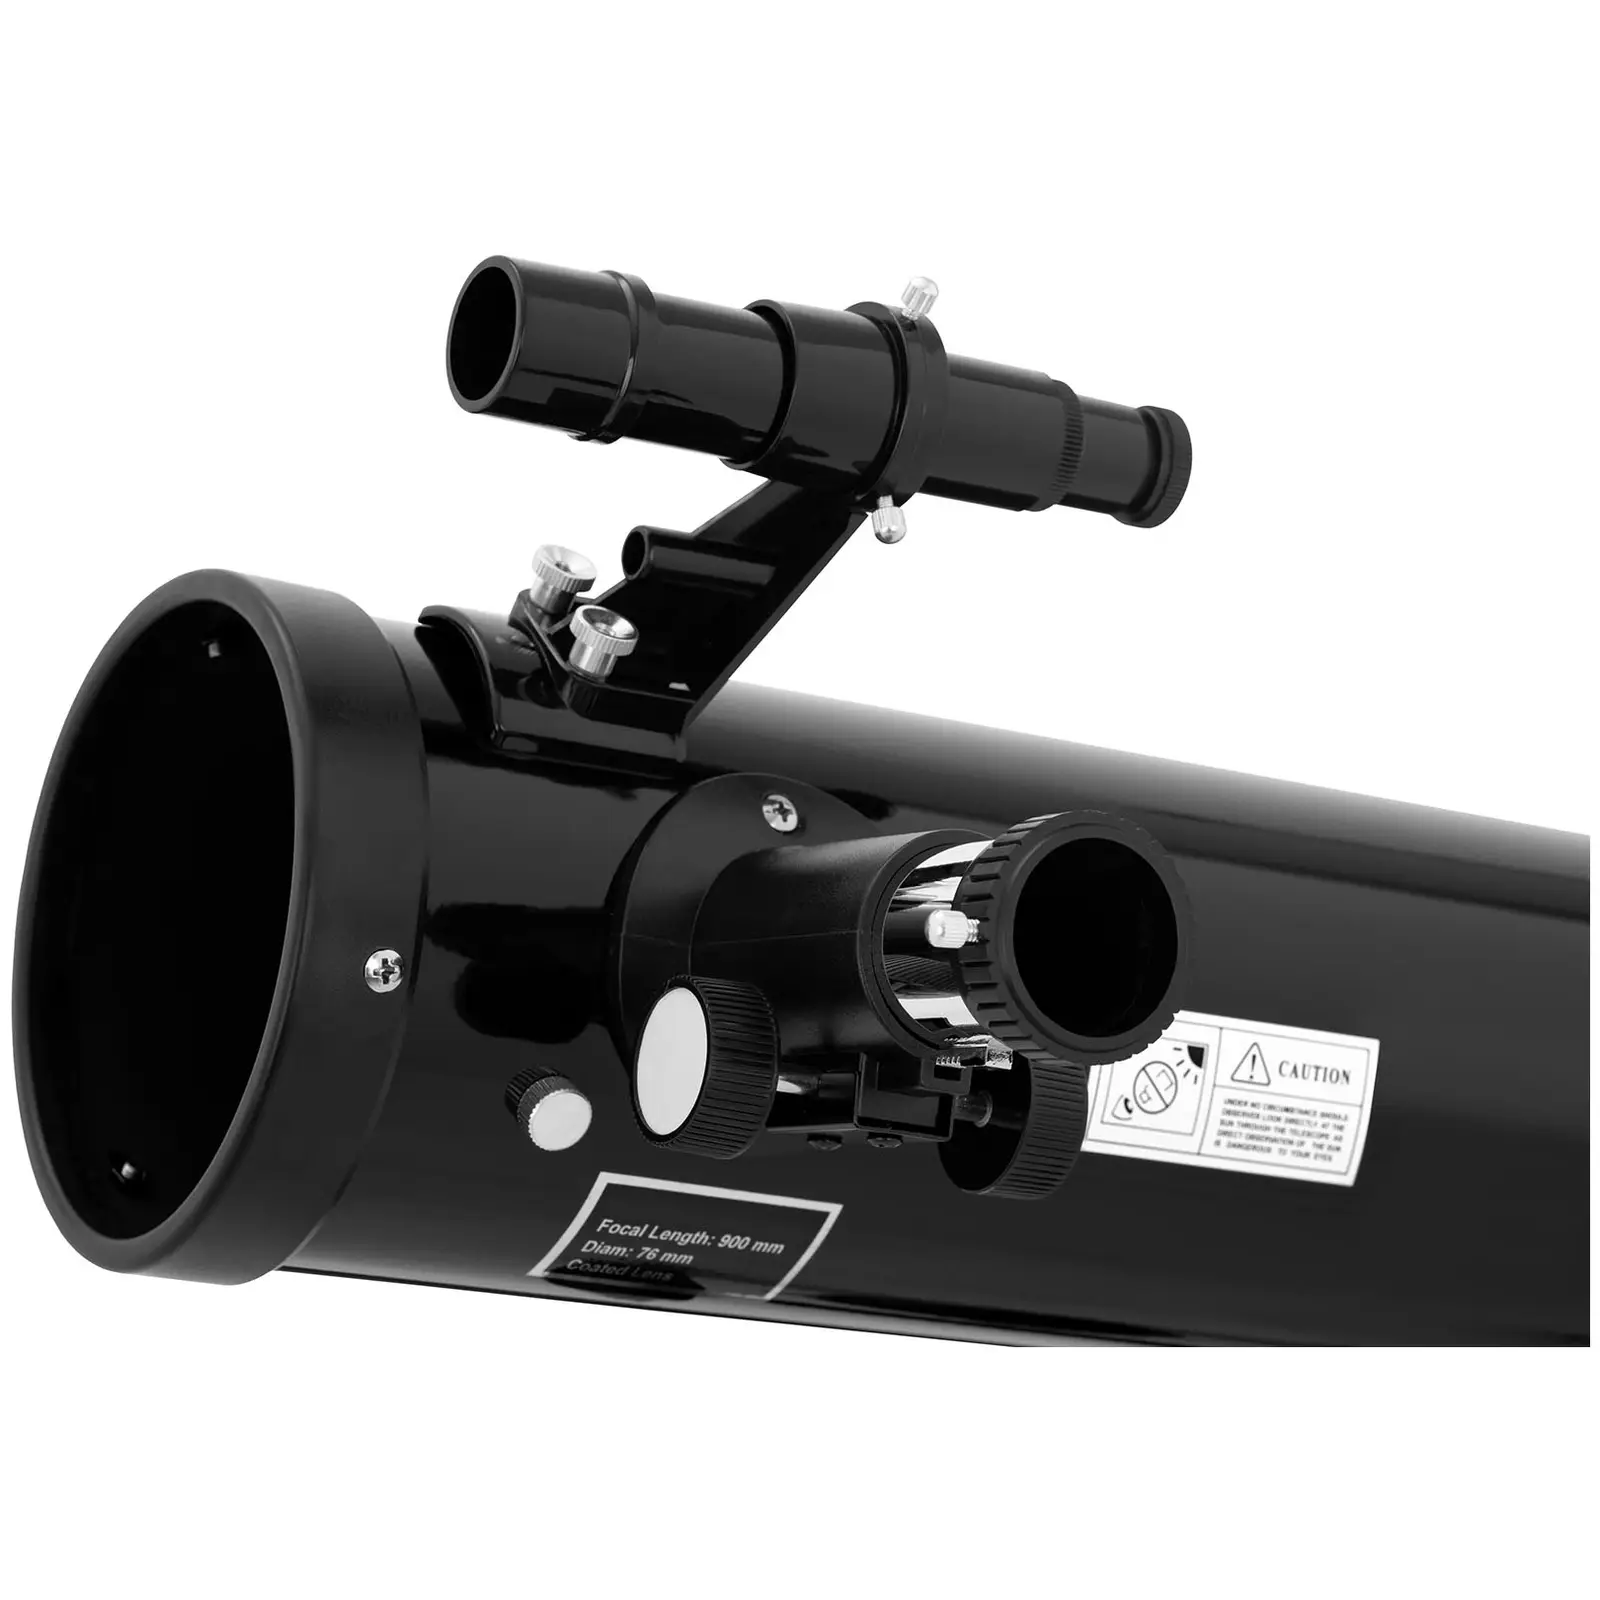 Csillagászati távcső - Ø 76 mm - 900 mm - háromlábú állvány